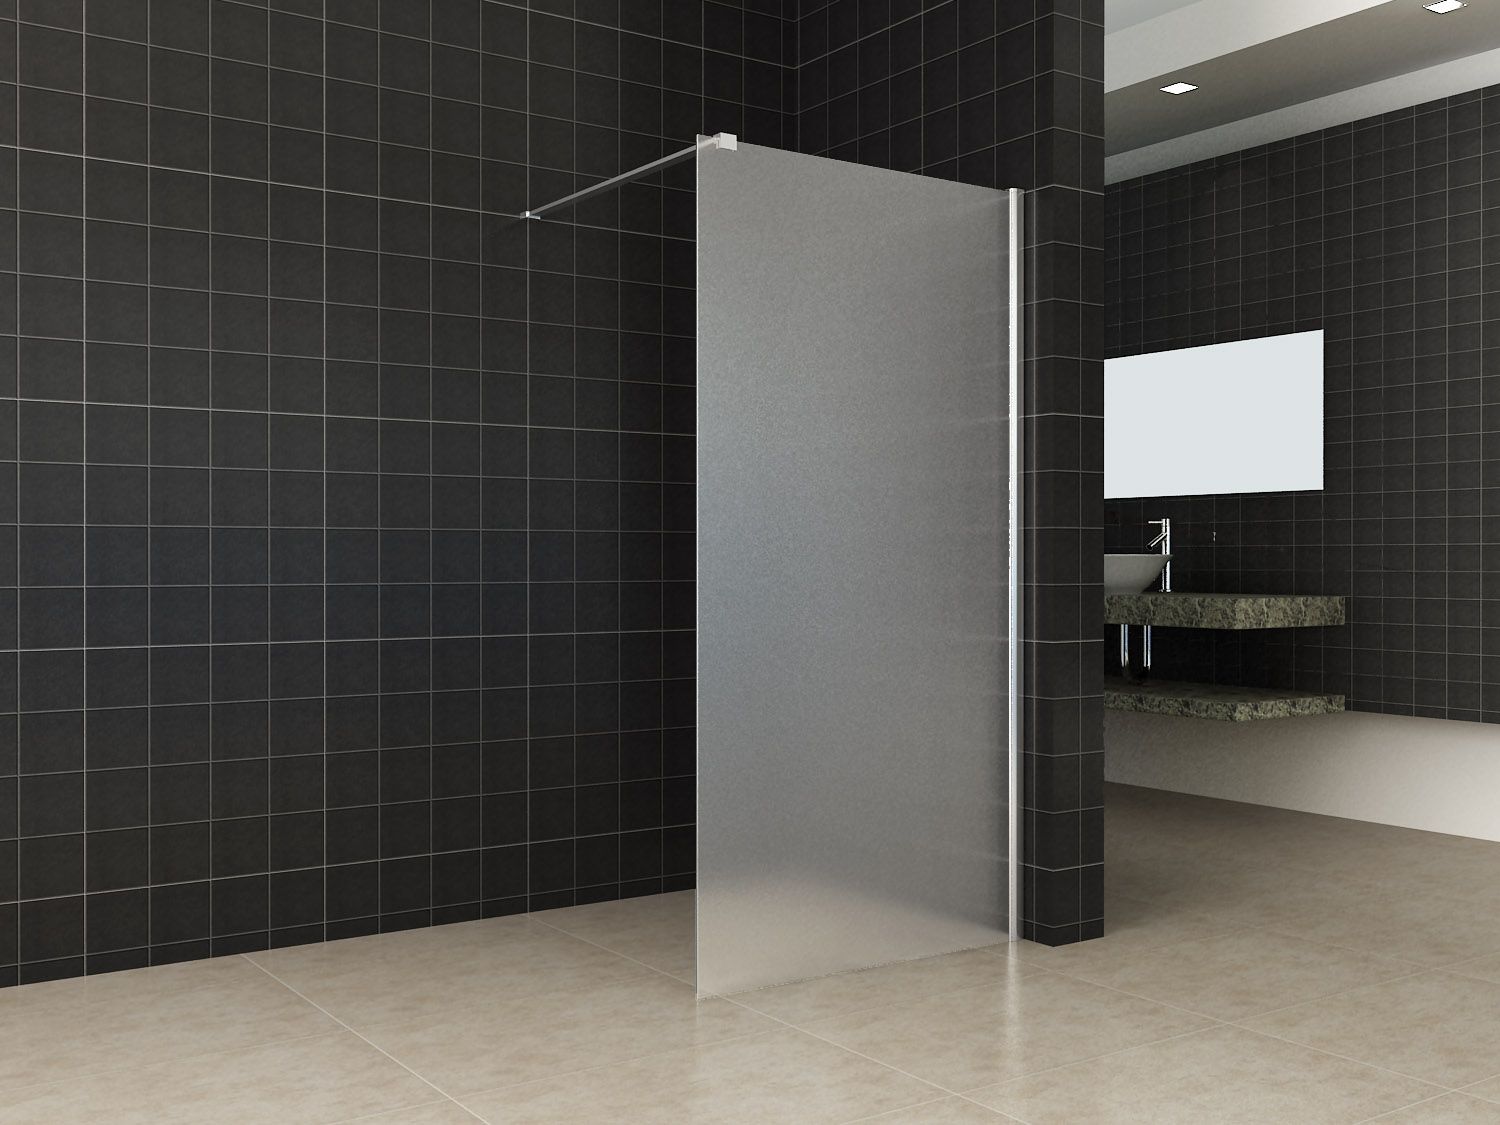 Echter Rationeel Voordracht Design douchewand voor inloopdouche, diverse maten uit voorraad leverbaar